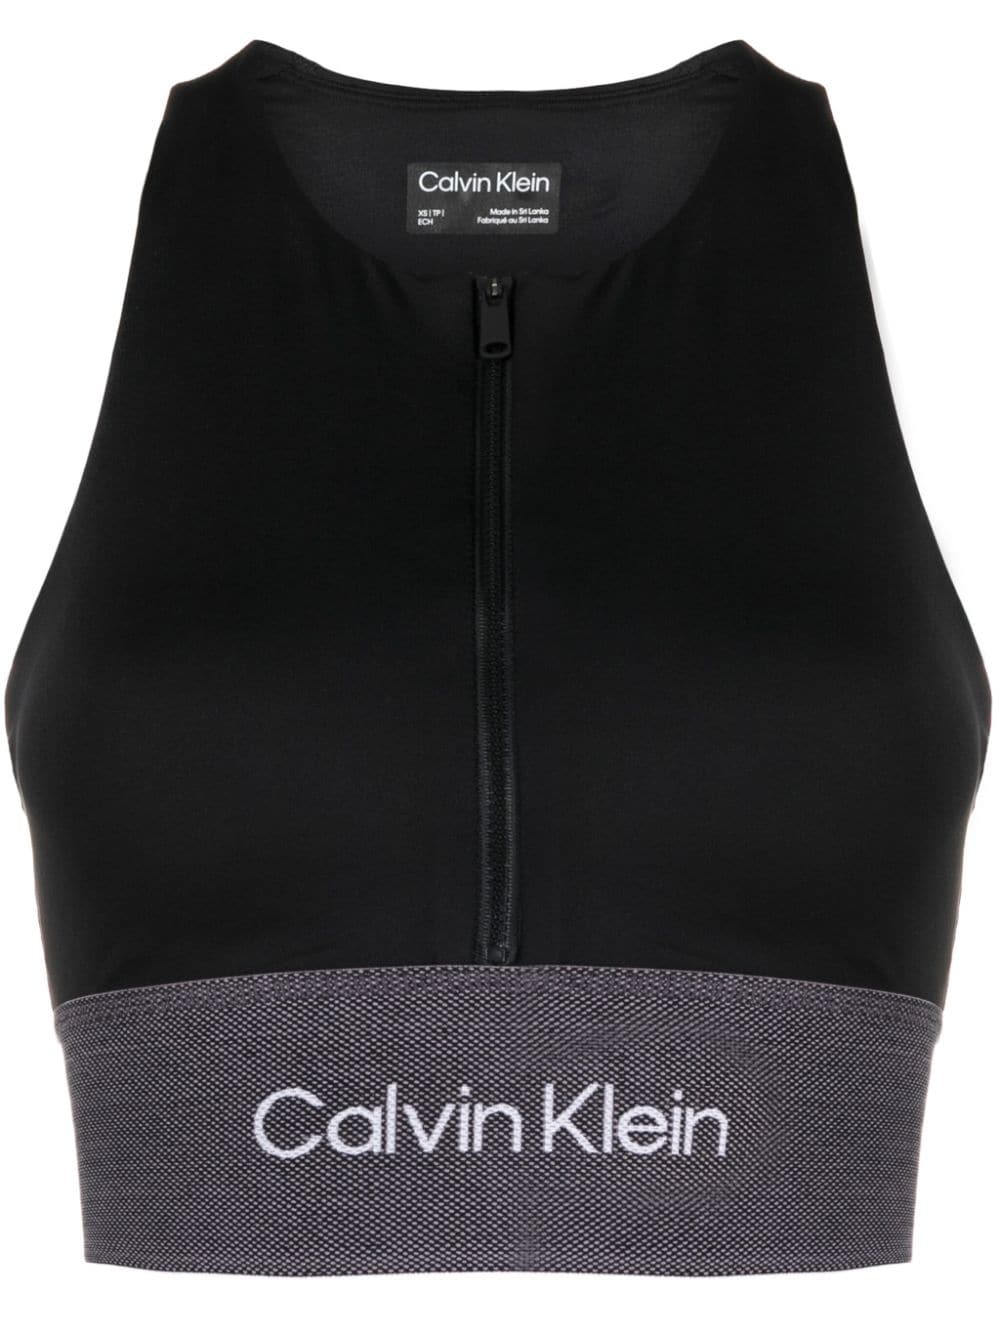 Calvin Klein logo-print Sports Bra - Farfetch